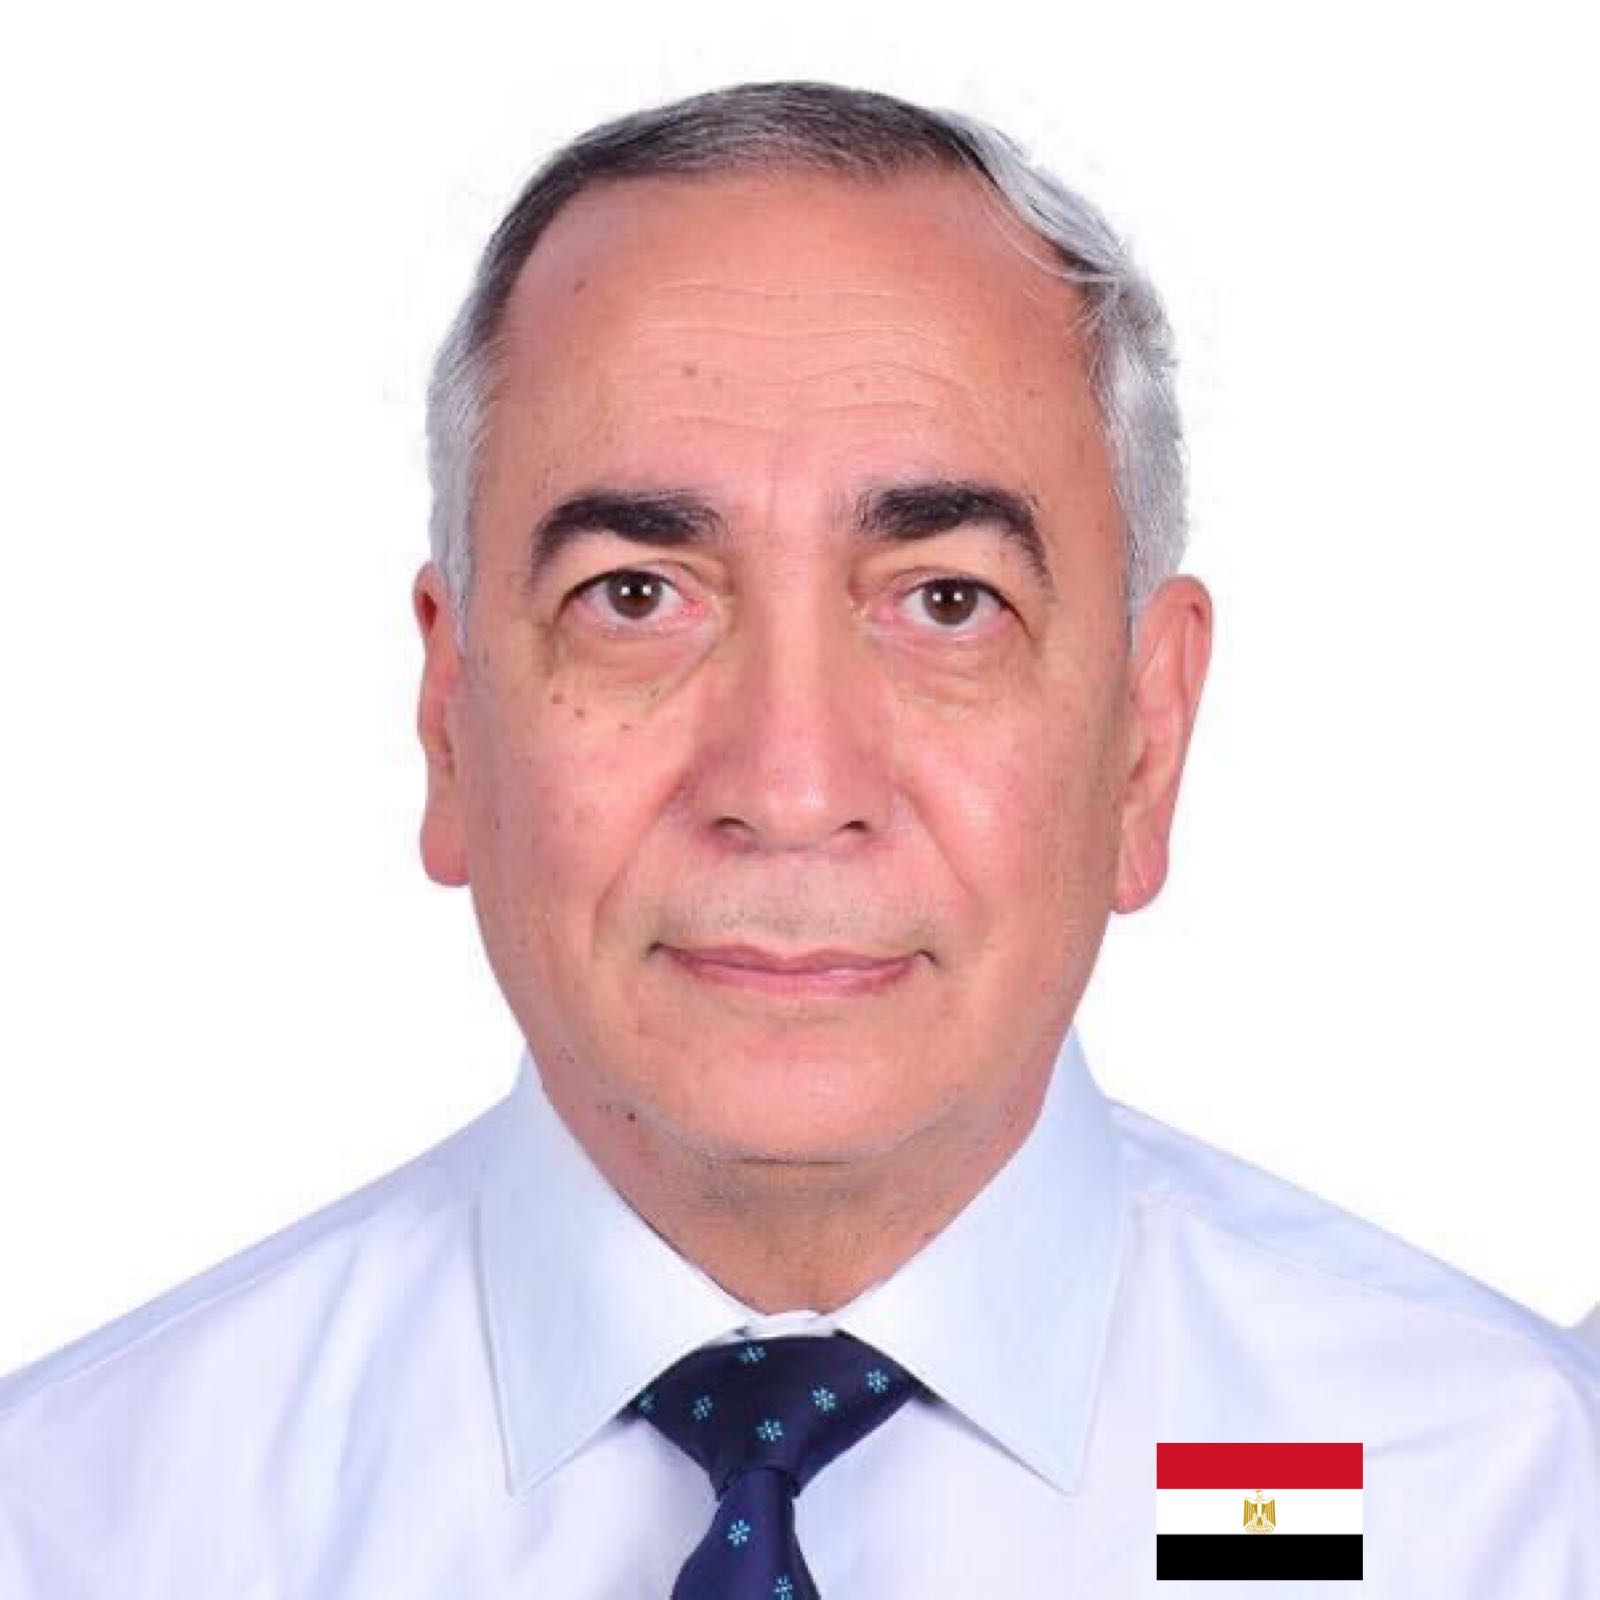 Dr. Hussain Elsayes